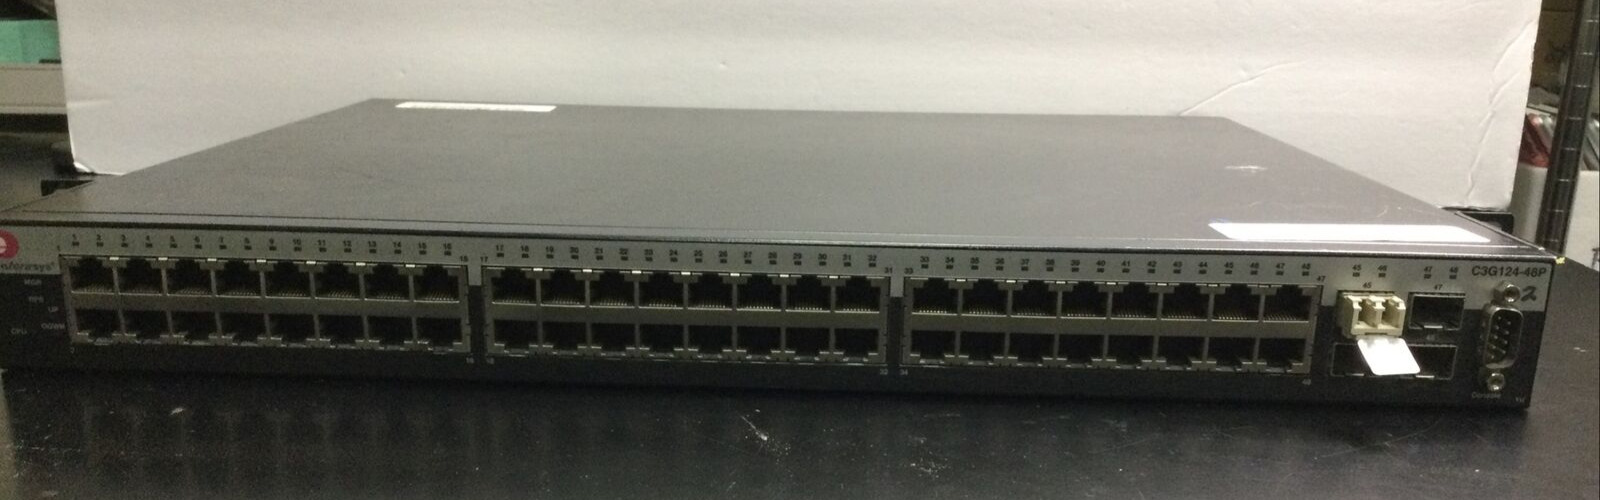 Enterasys SecureStack C3 48-Port External Managed Network Switch C3G124-48